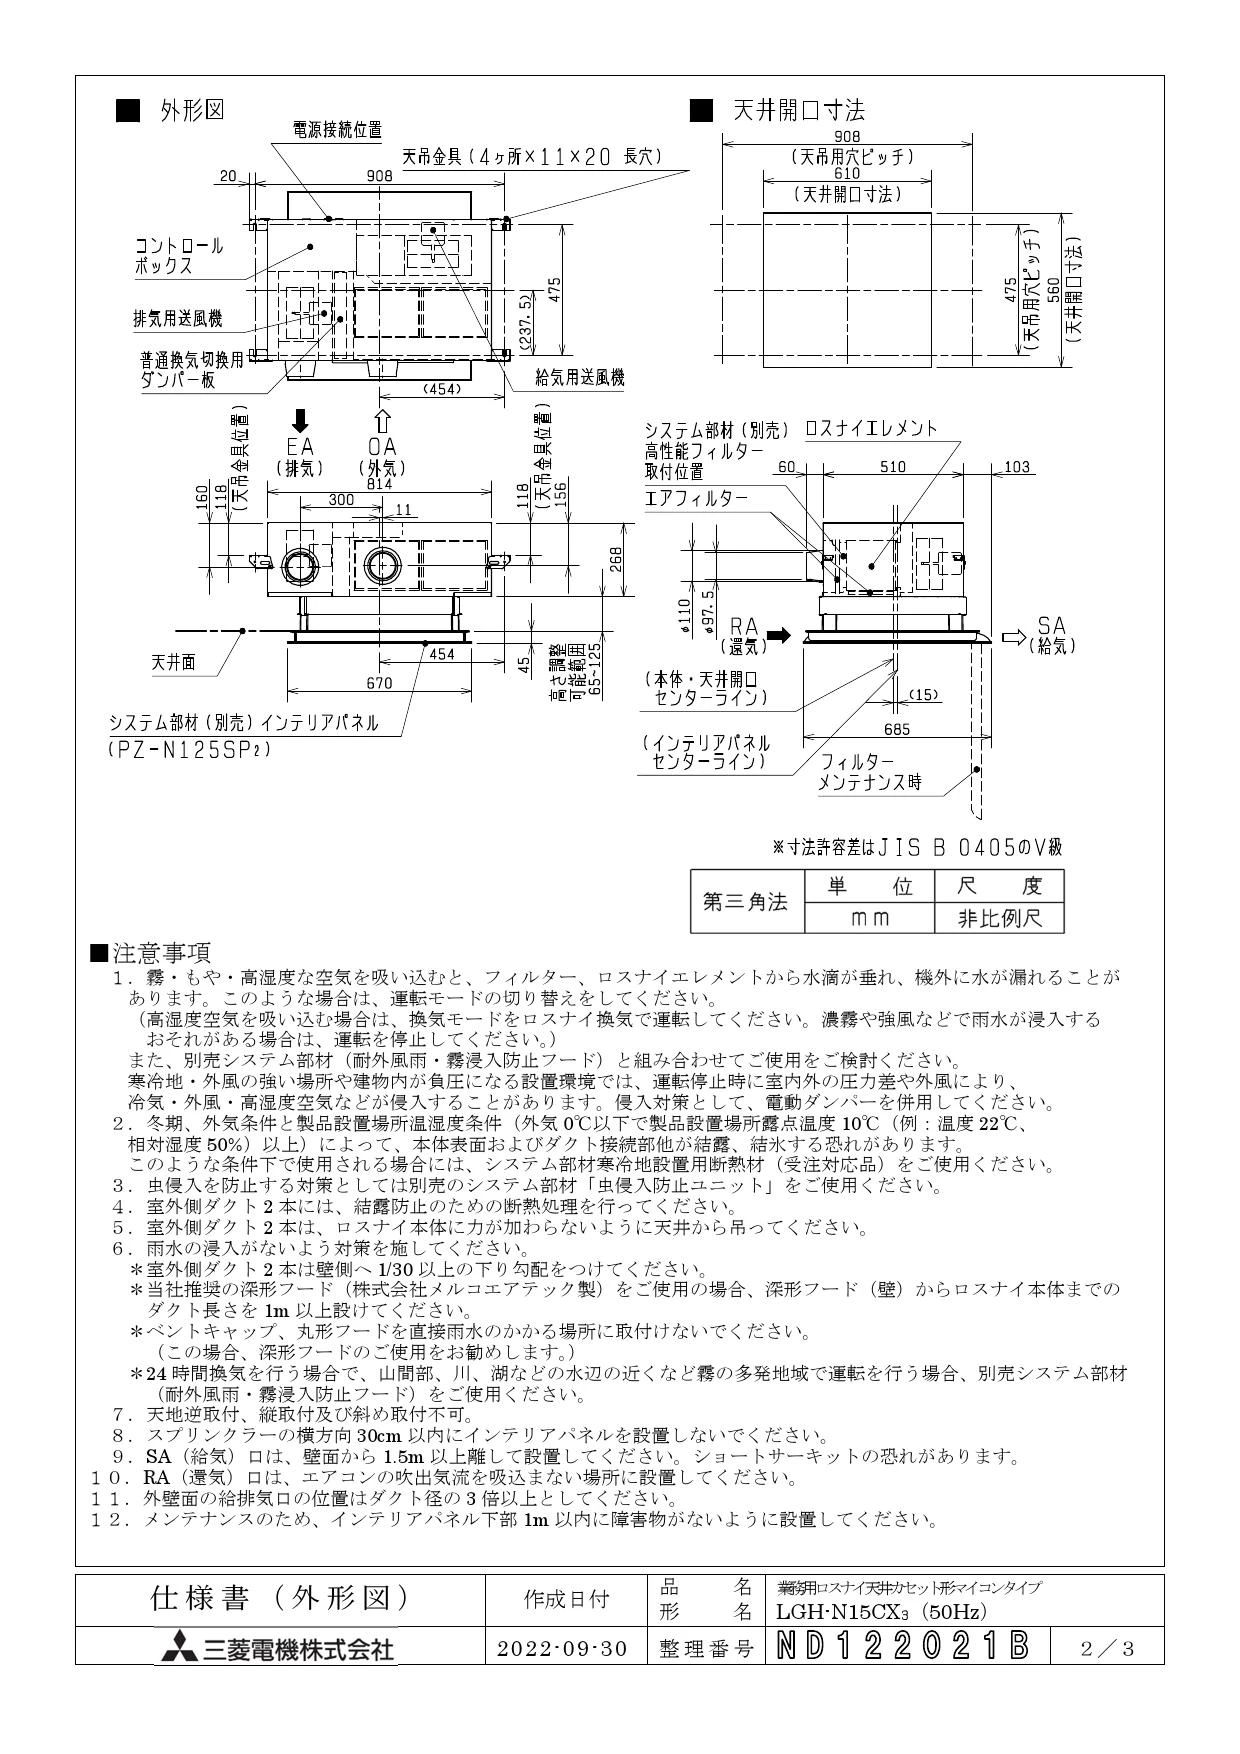 三菱電機 LGH-N15CX3 取扱説明書 施工説明書 納入仕様図|三菱電機 業務 ...